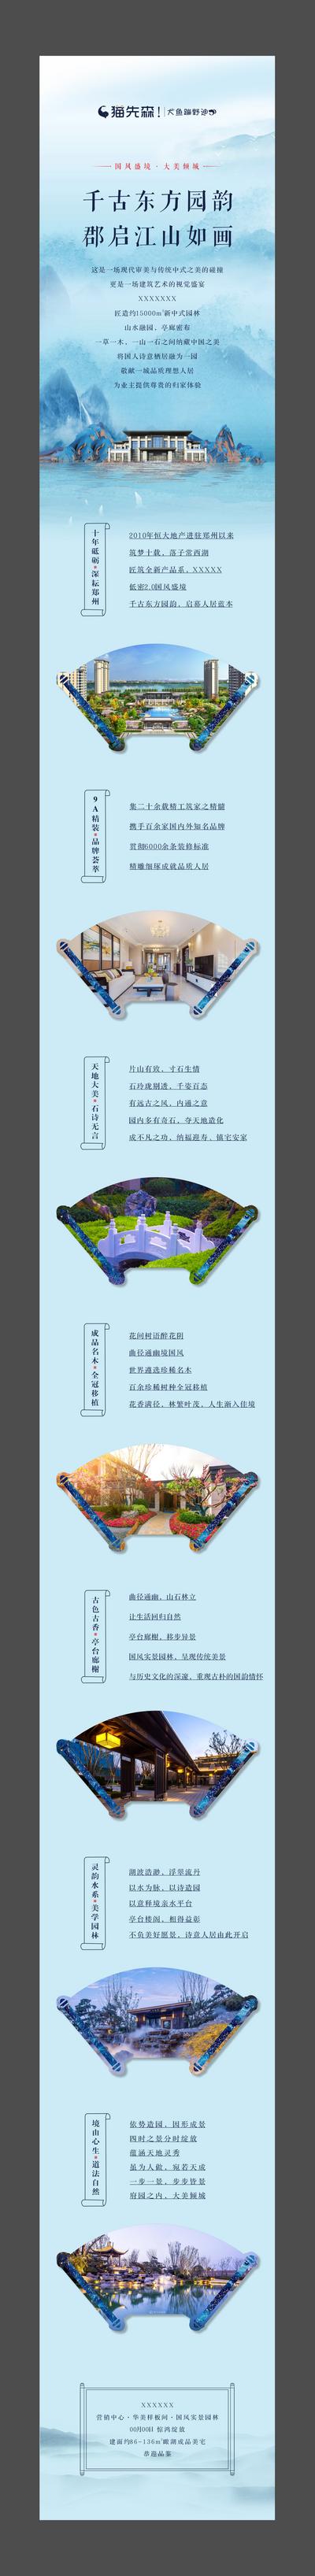 南门网 专题设计 长图 房地产 园林 新中式 湖景 山水 扇形 卷轴